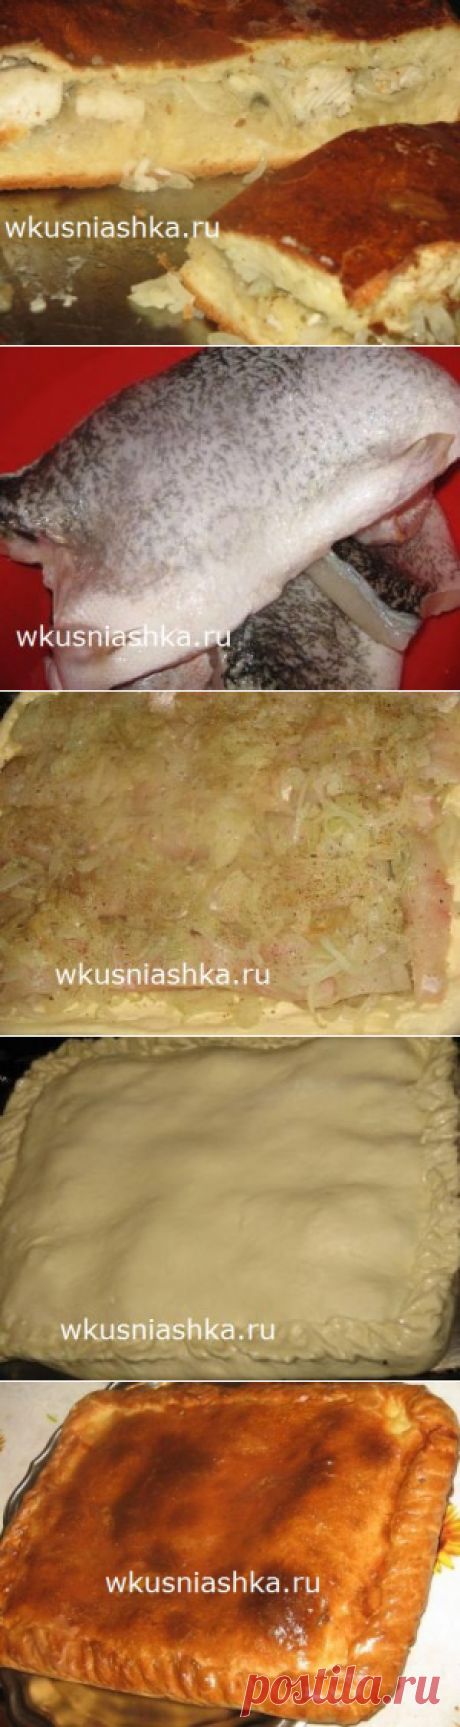 пирог из щуки рецепт с фото | Кулинарные рецепты вкусно